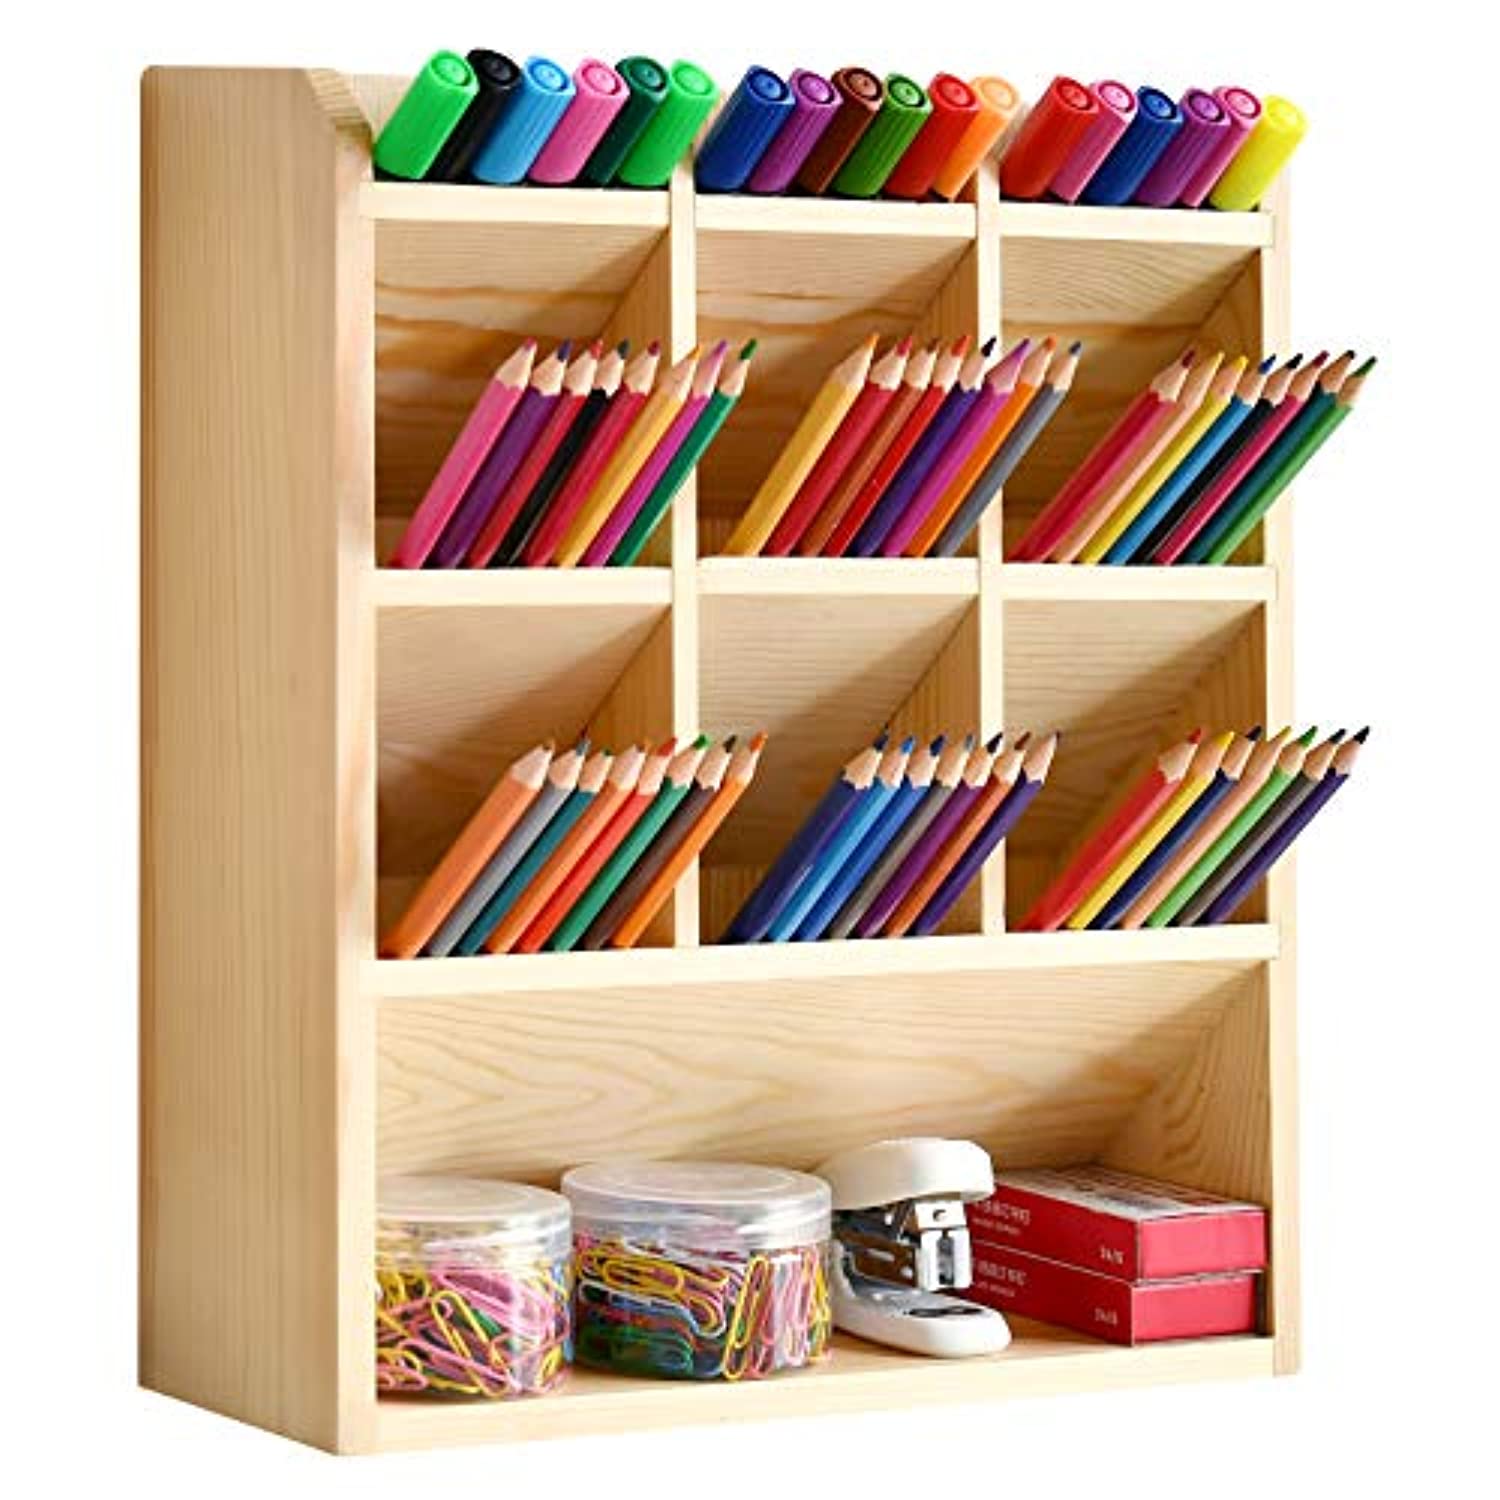  Soporte para libros de madera de escritorio, estantería,  estantería, suministros de oficina, organizador de escritorio de madera,  estante de almacenamiento para estantería del hogar (color: B) : Hogar y  Cocina